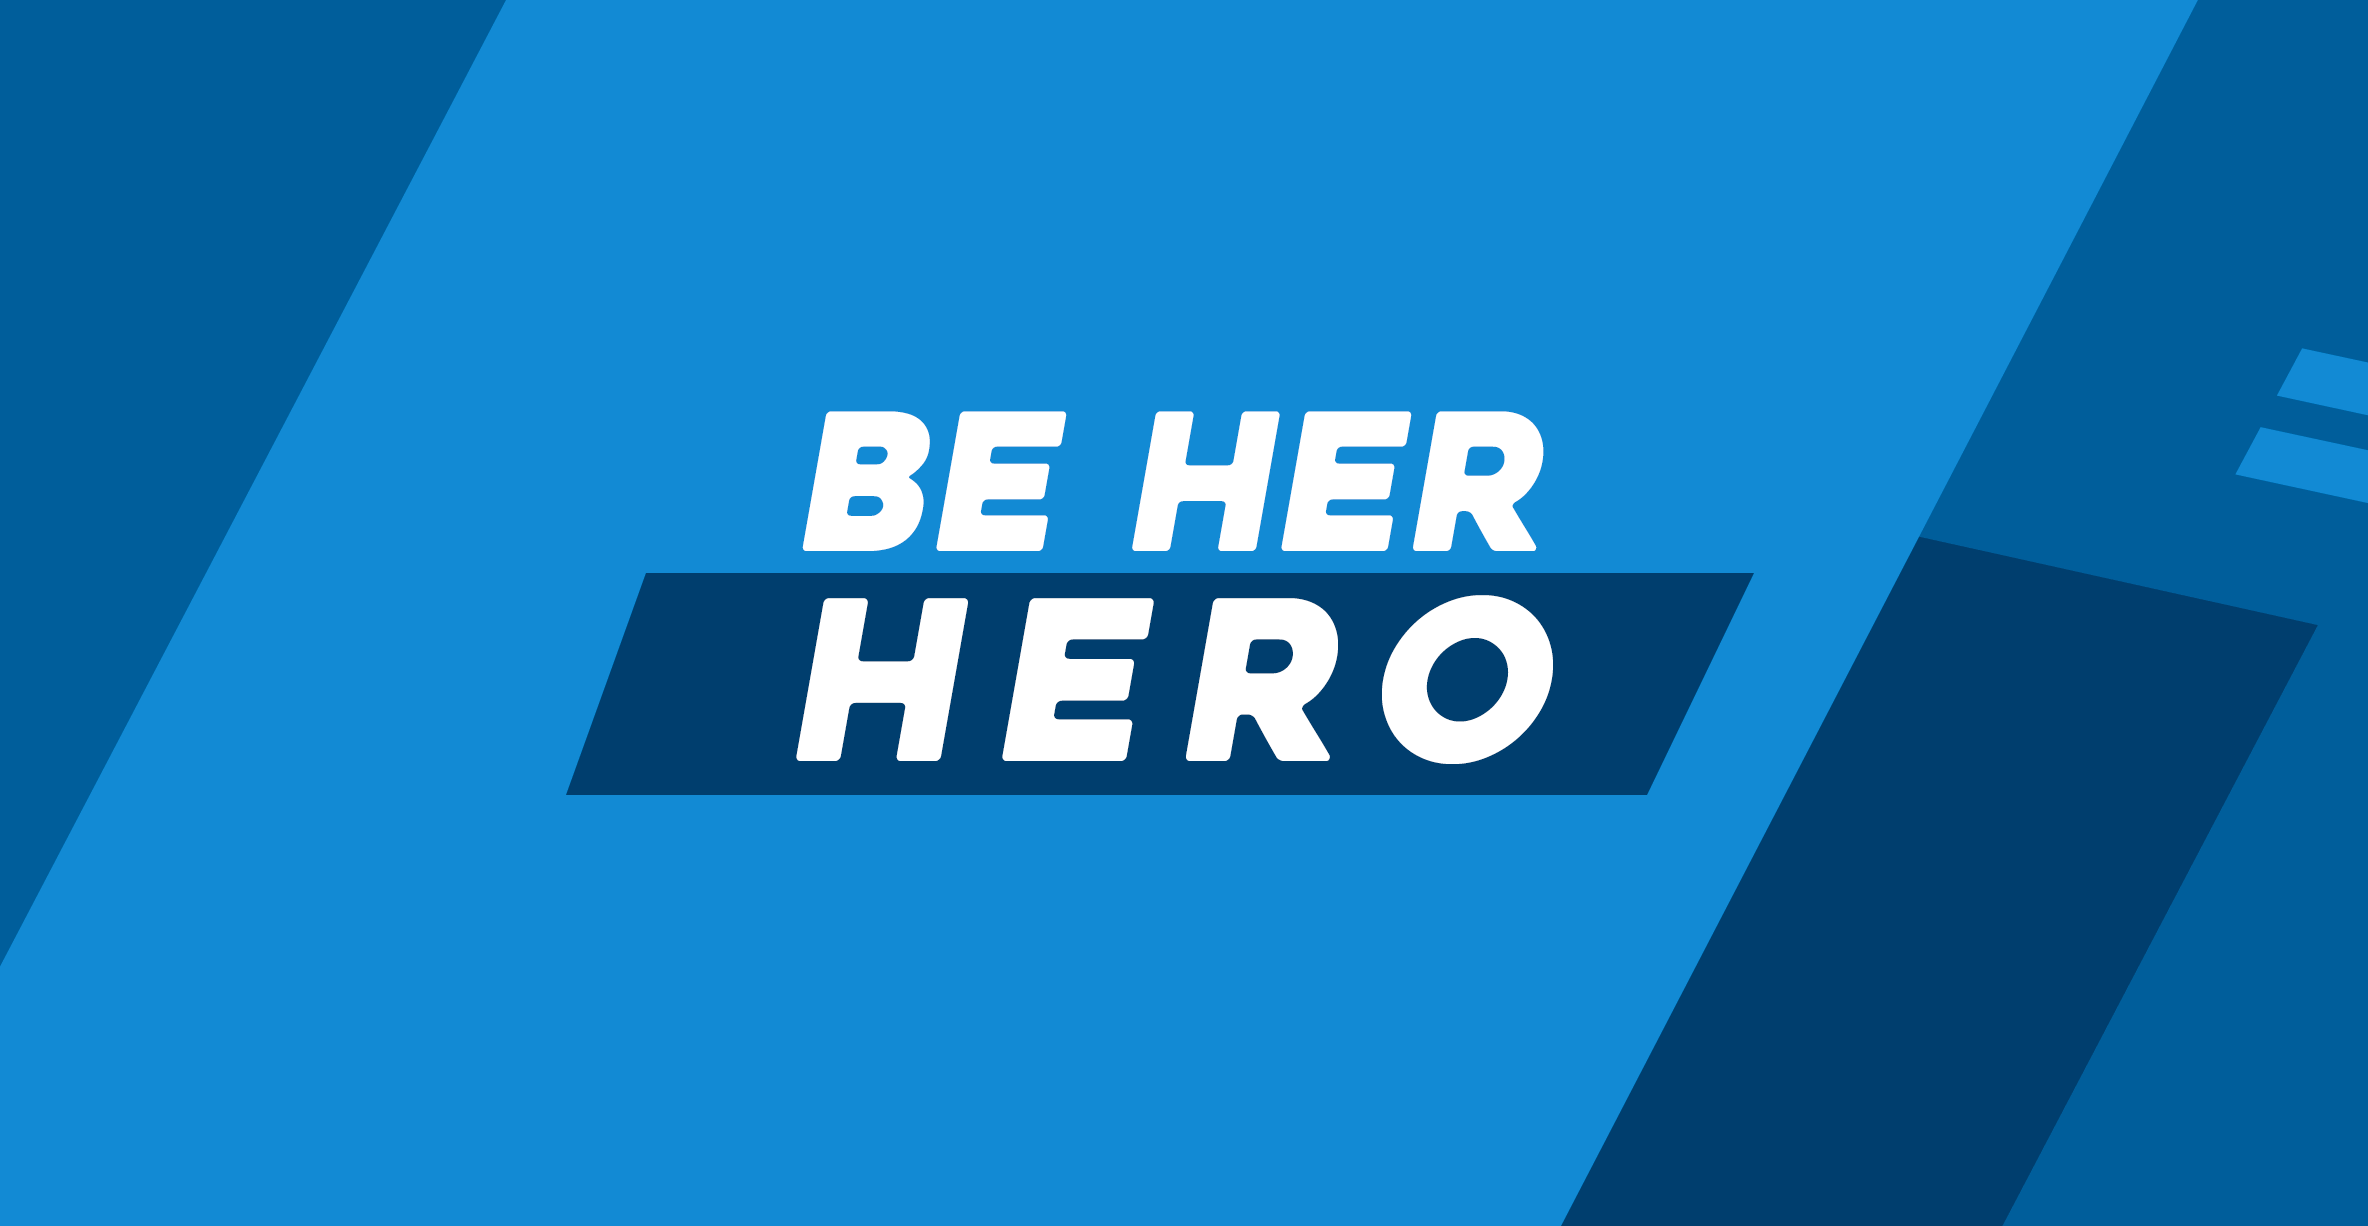 Be Her Hero